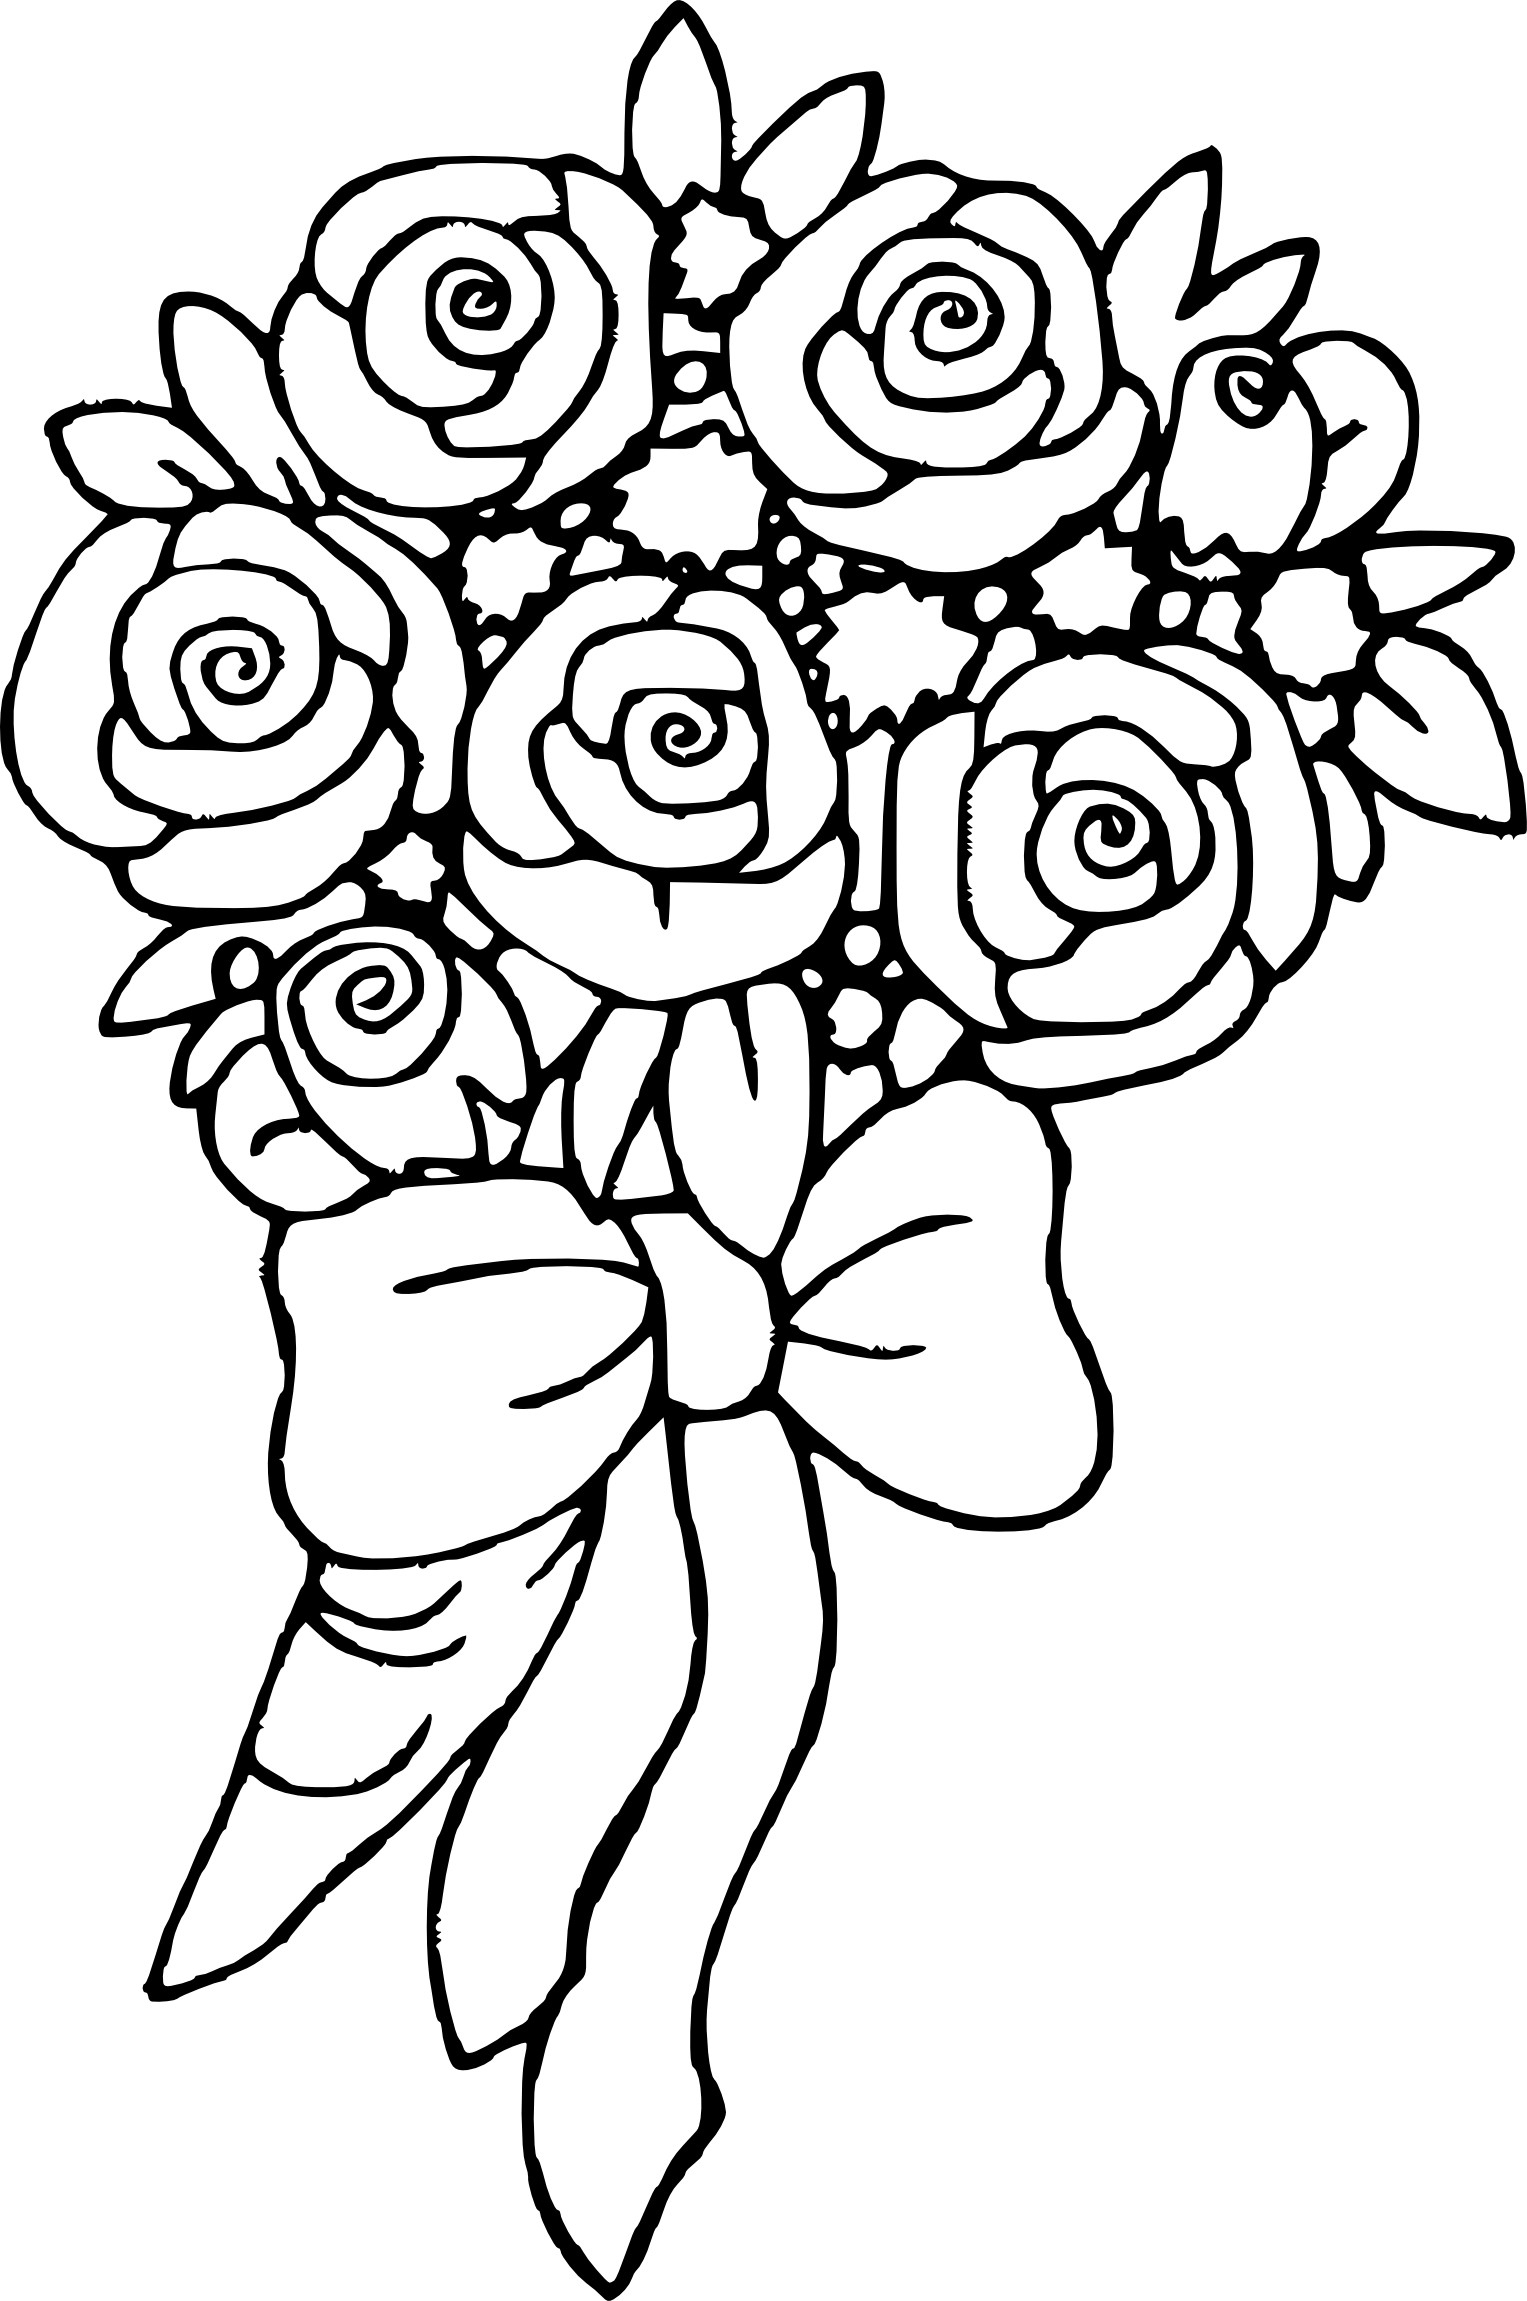 Coloriage Bouquet De Fleurs À Imprimer Sur Coloriages dedans Dessins De Fleurs